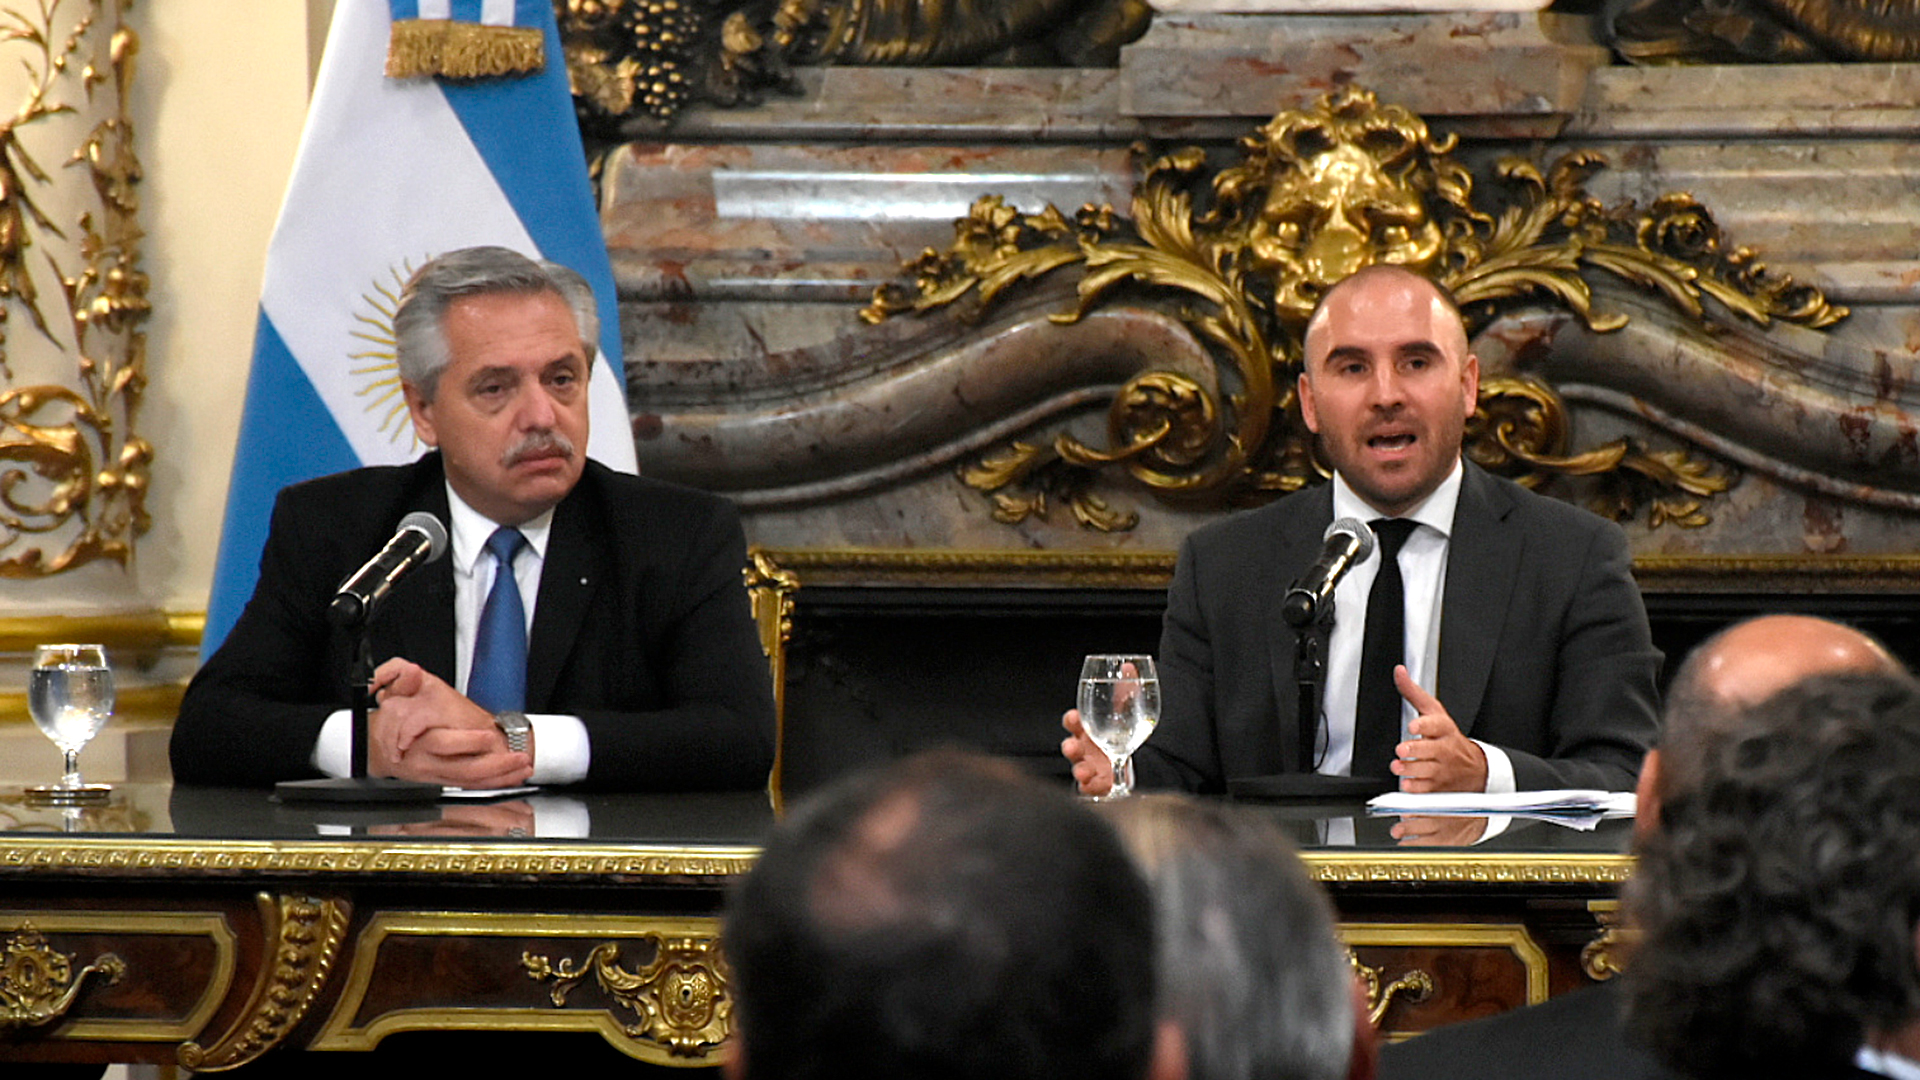 El ex ministro y el Presidente en un acto en la Rosada